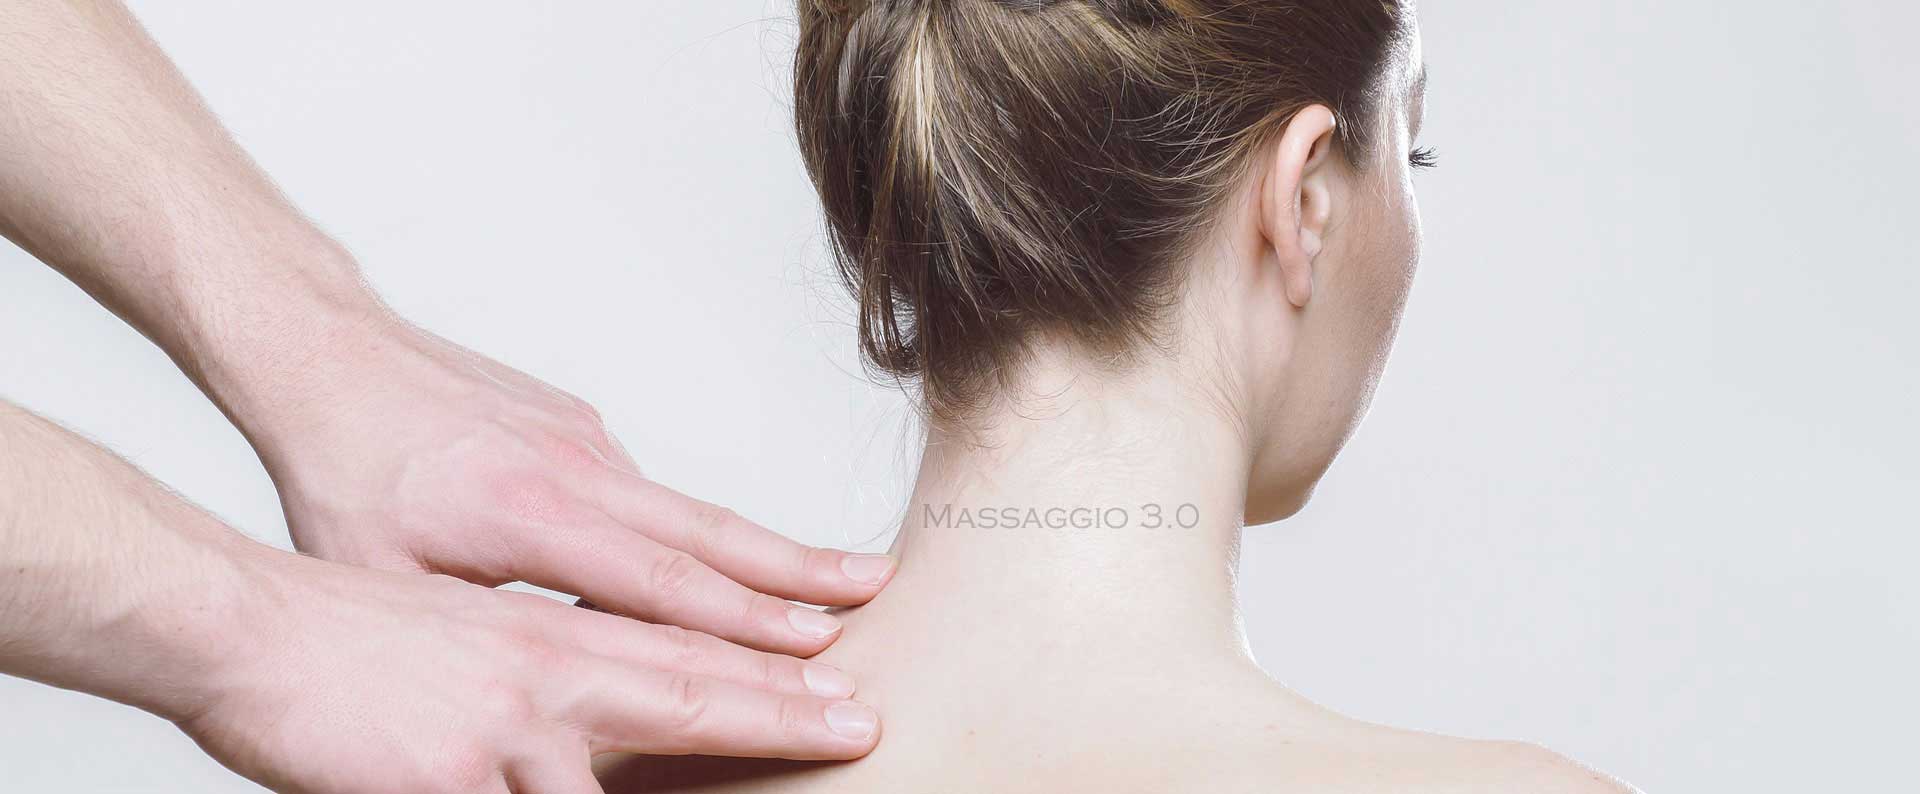 come effettuare il massaggio cervicale